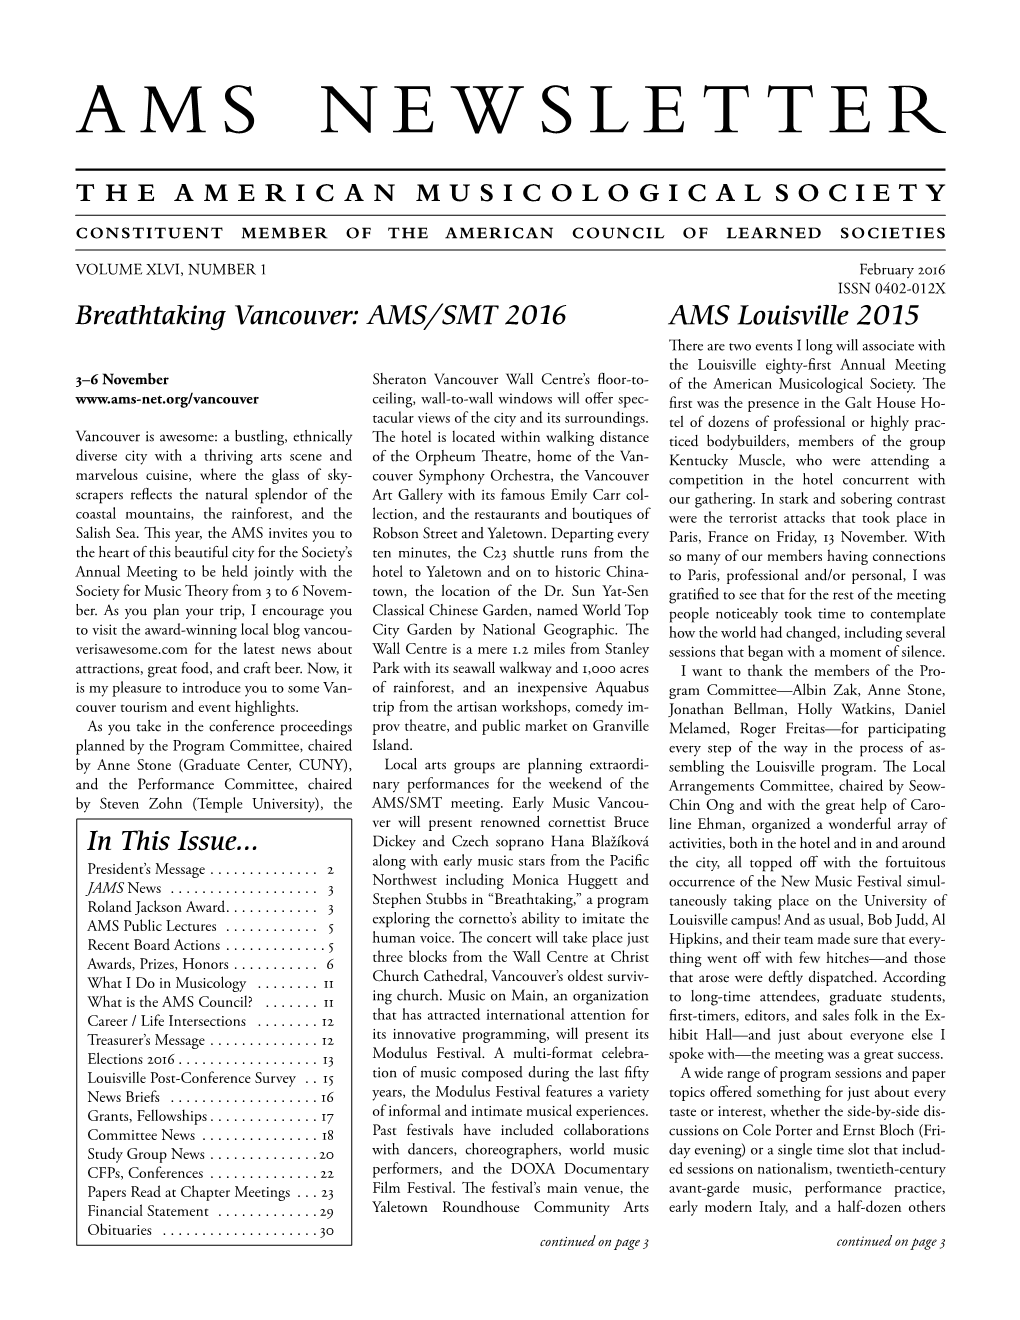 AMS Newsletter February 2016